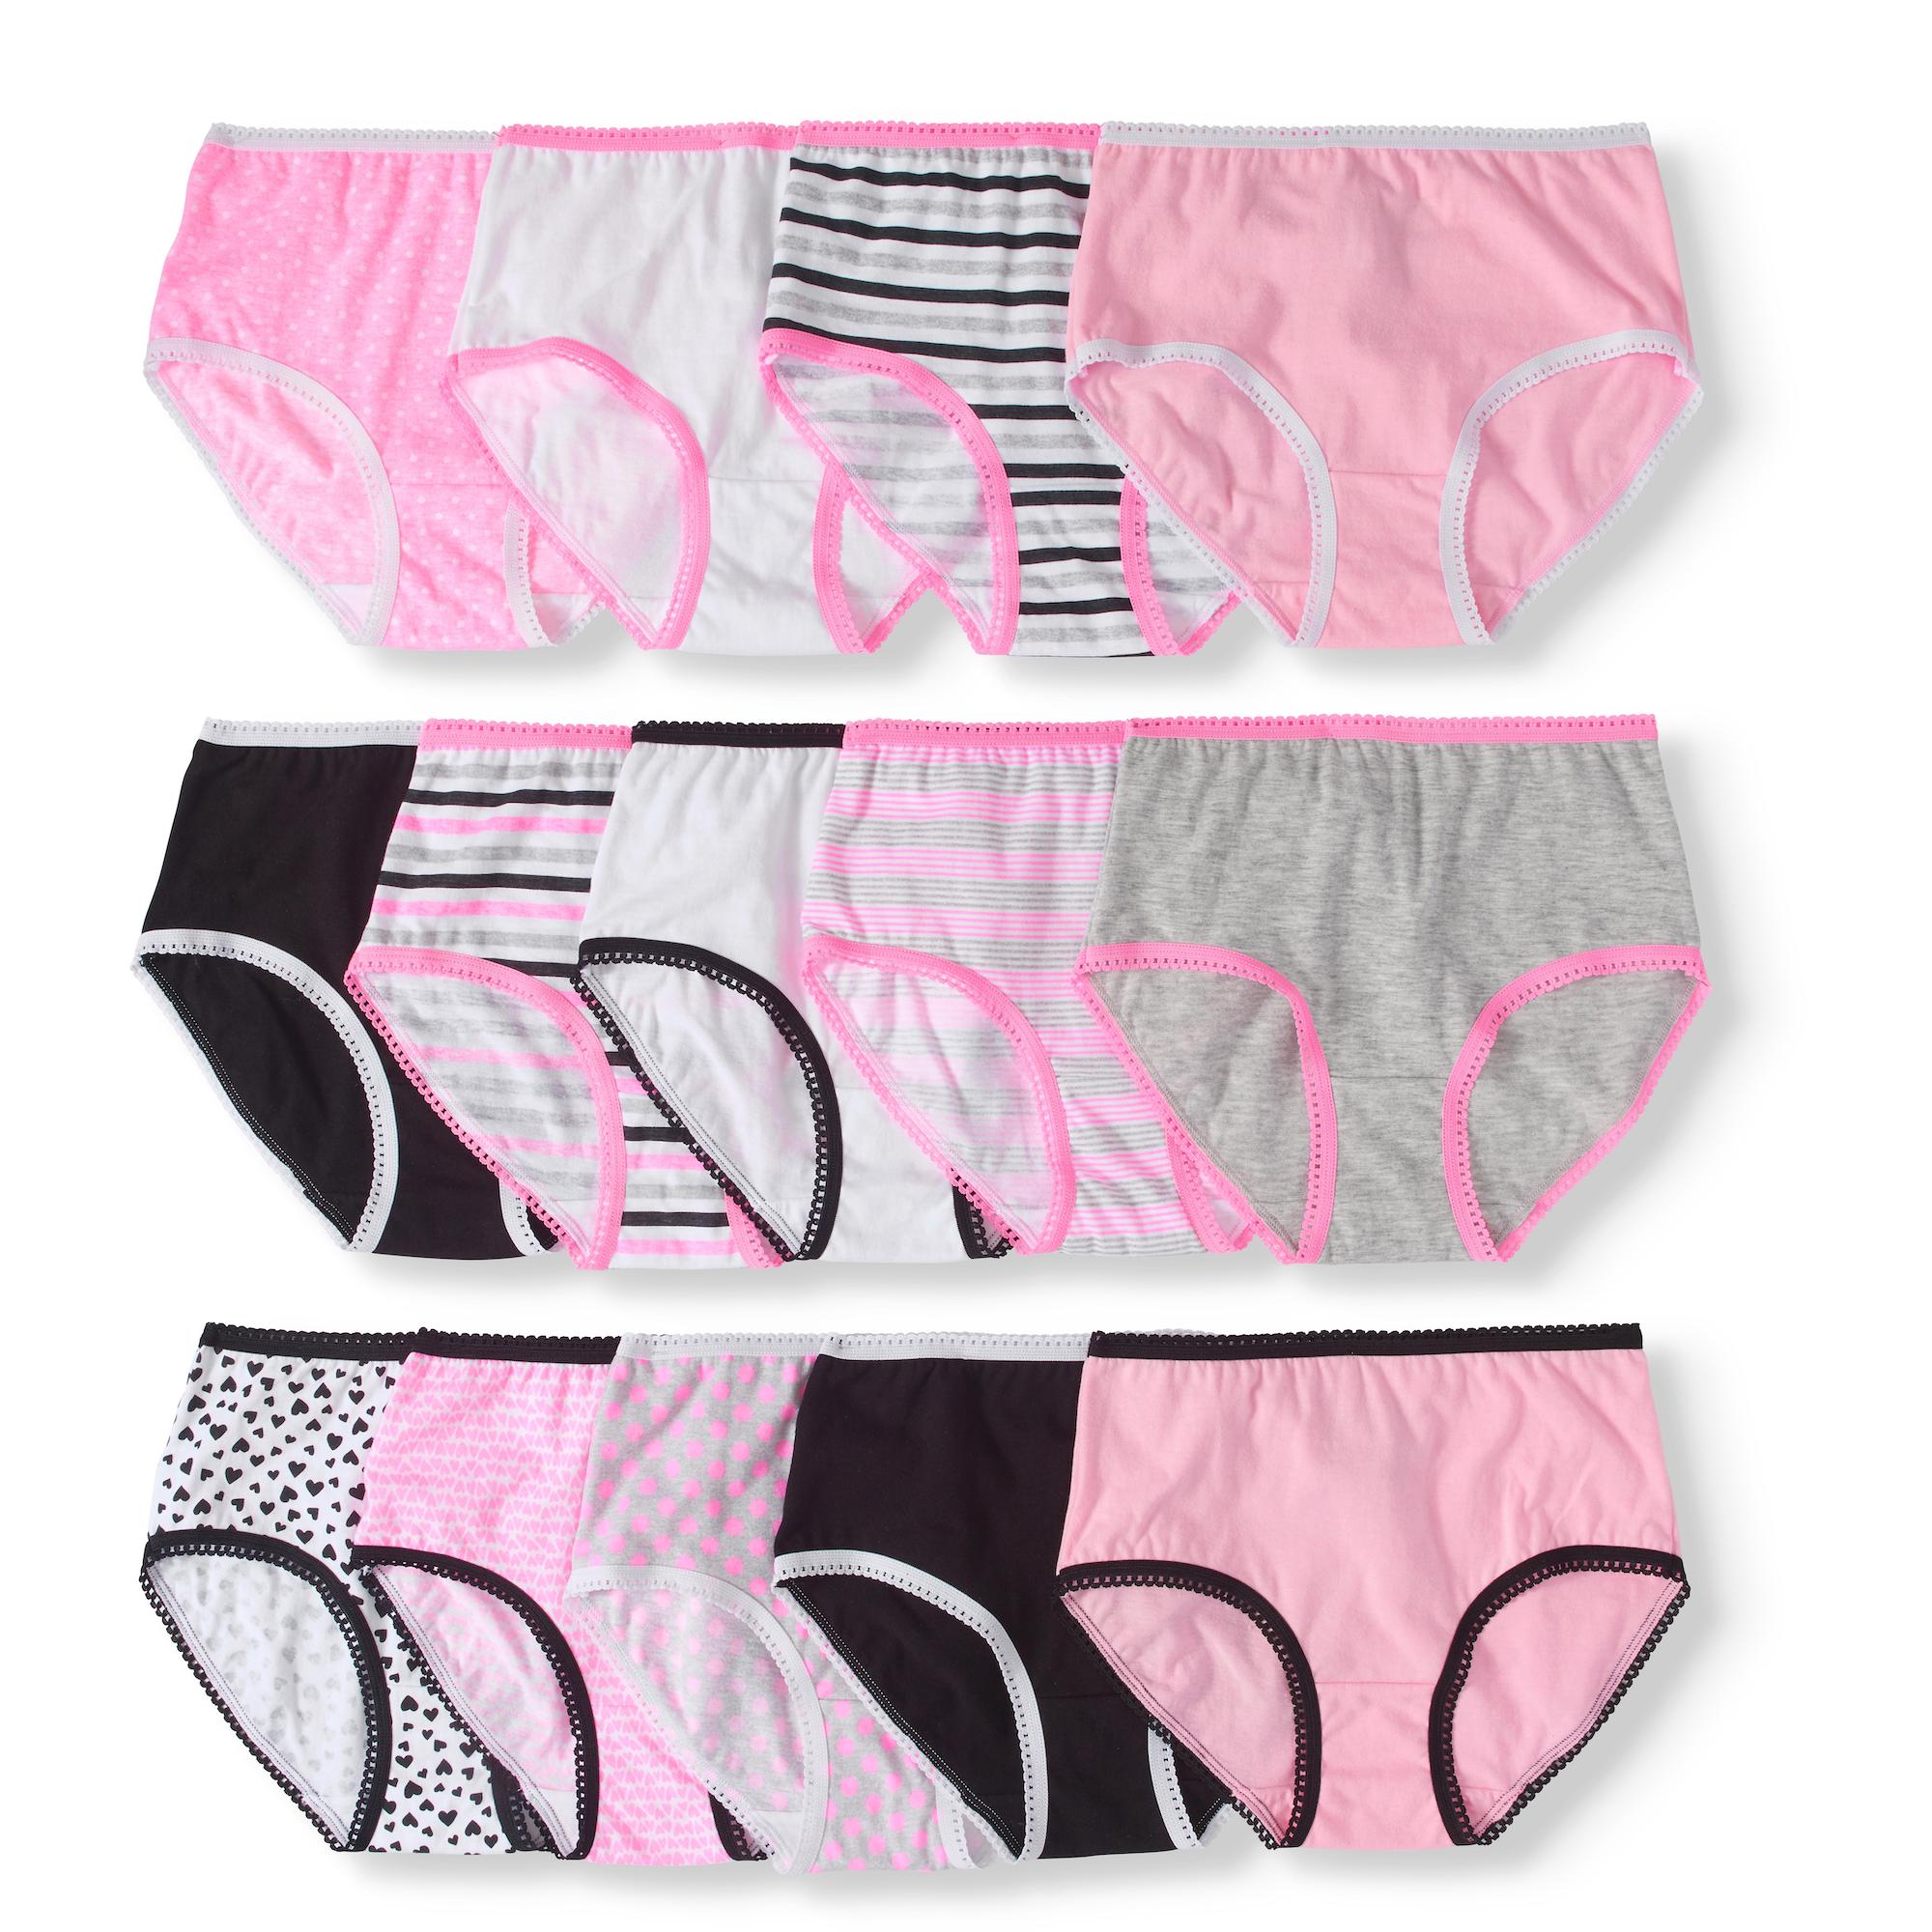 Wonder Nation Girls Brief Underwear 14-Pack, Sizes 4-18 - image 1 of 3